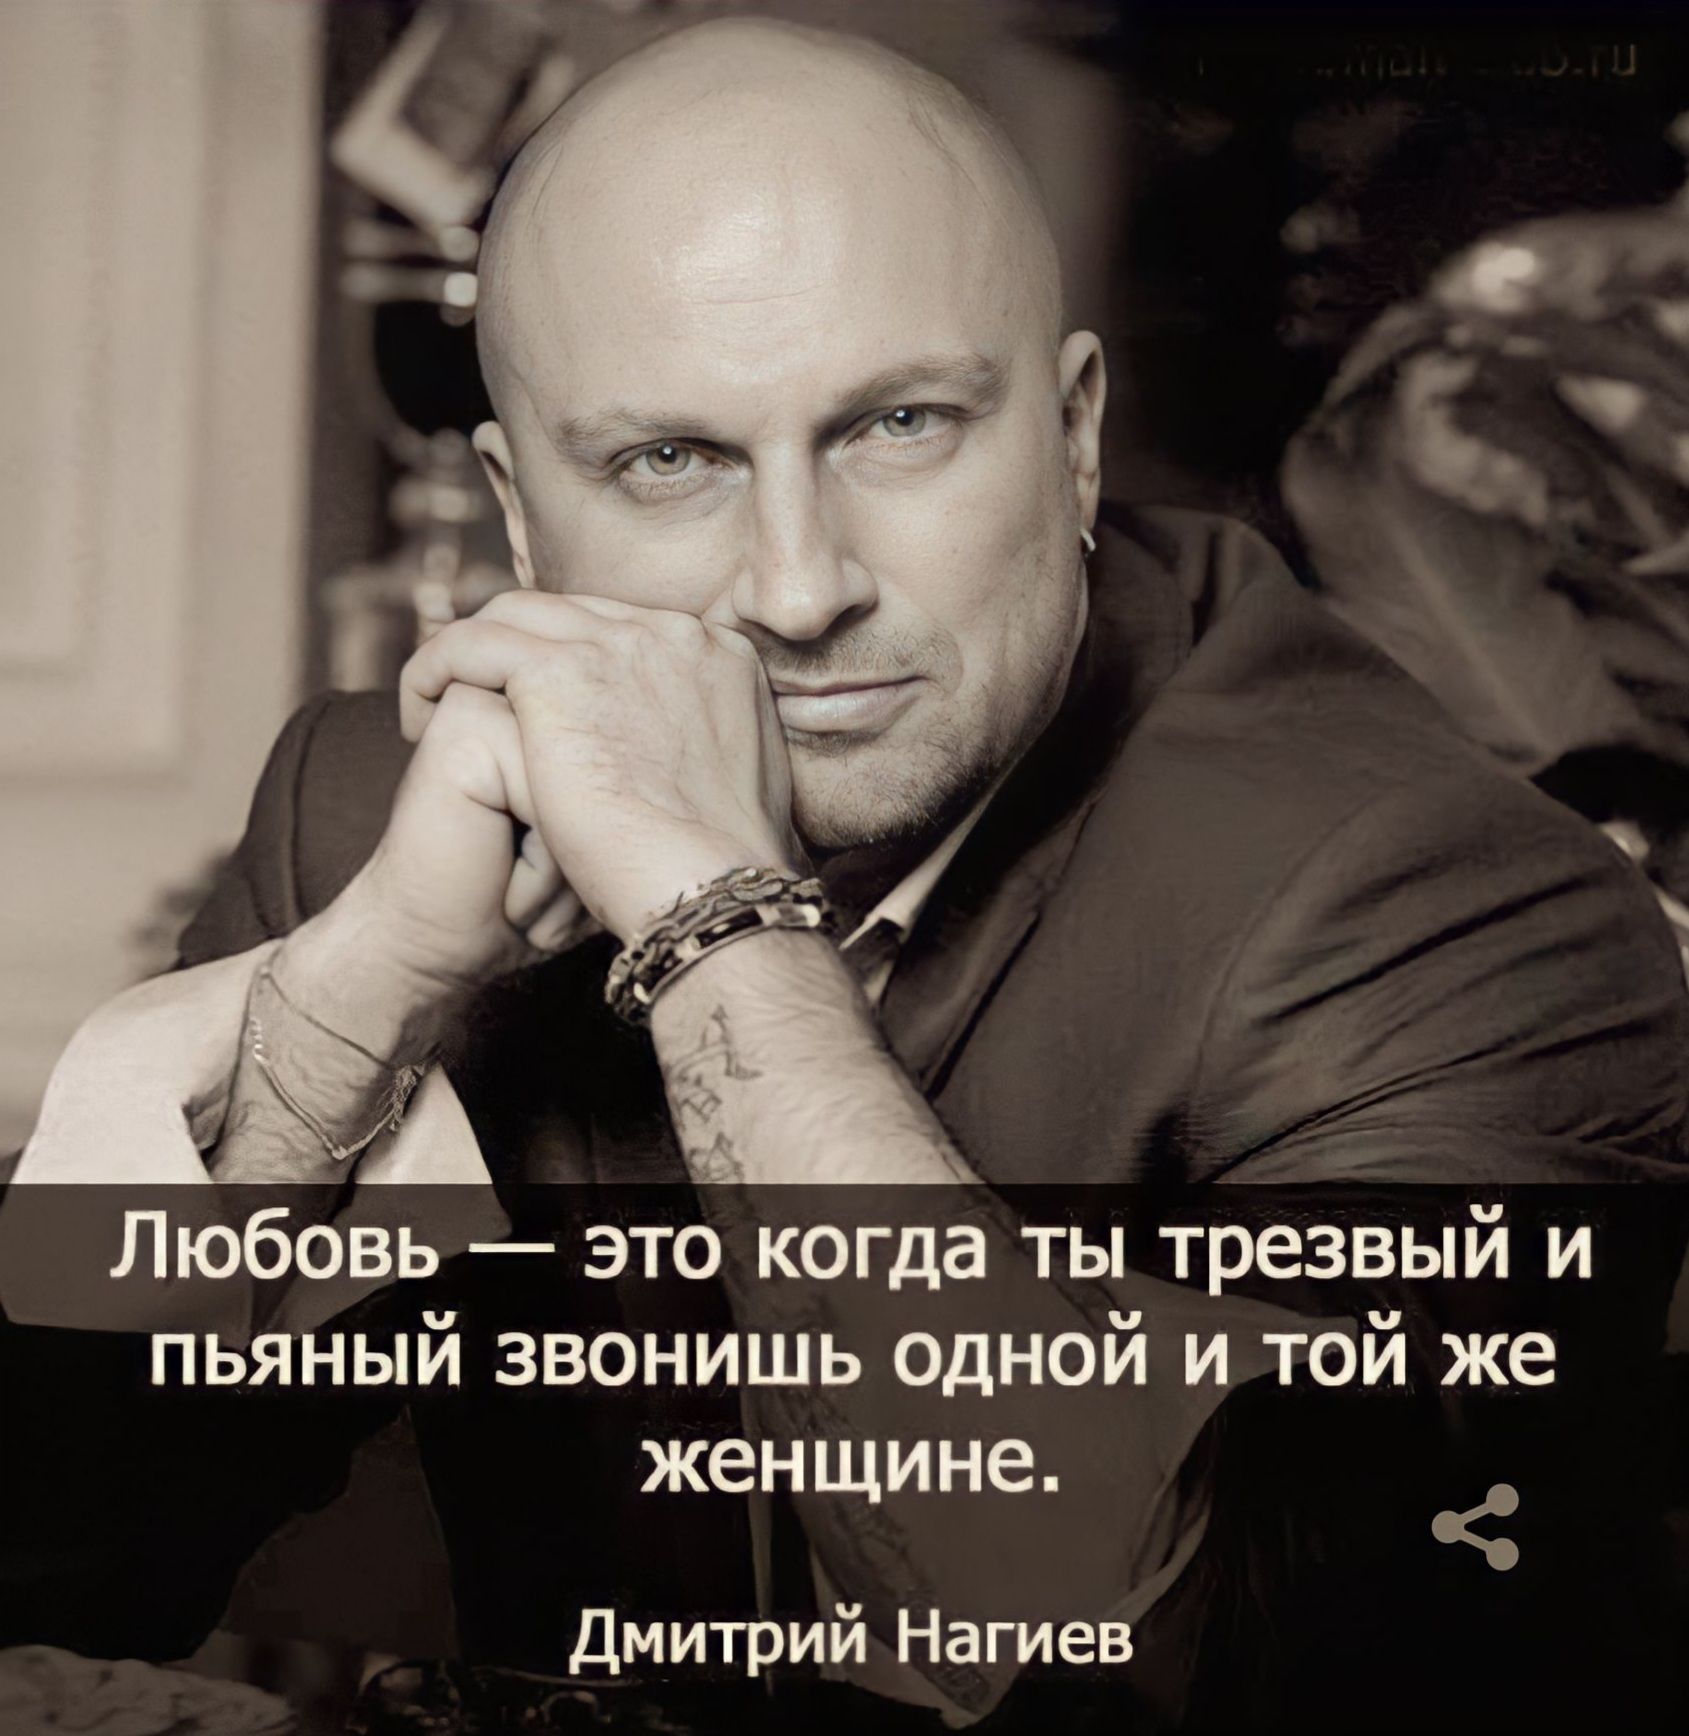 Дмитрий Нагиев цитаты